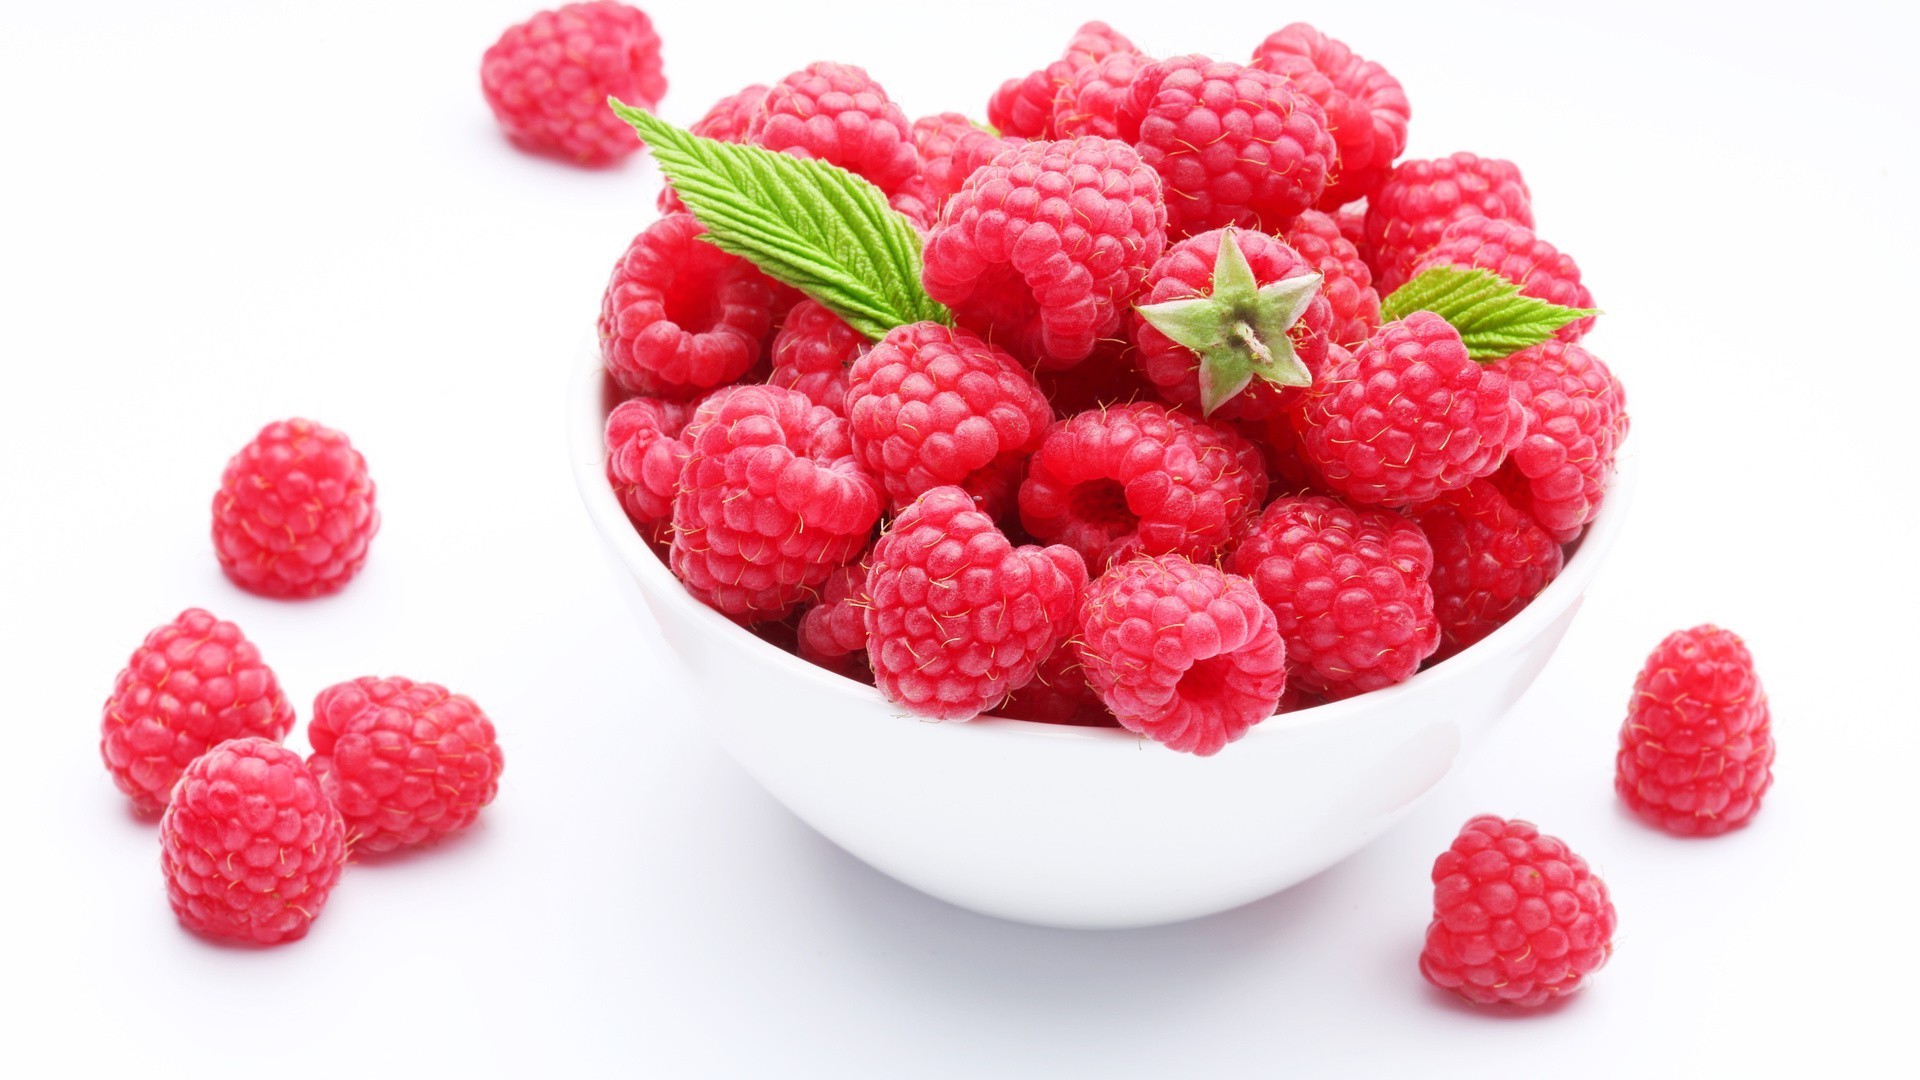 ягоды малина фрукты еда сладкий вкусные ягодка сочные здоровый вкусные диета освежение здоровья питание эпикур свежесть кондитерское изделие крупным планом